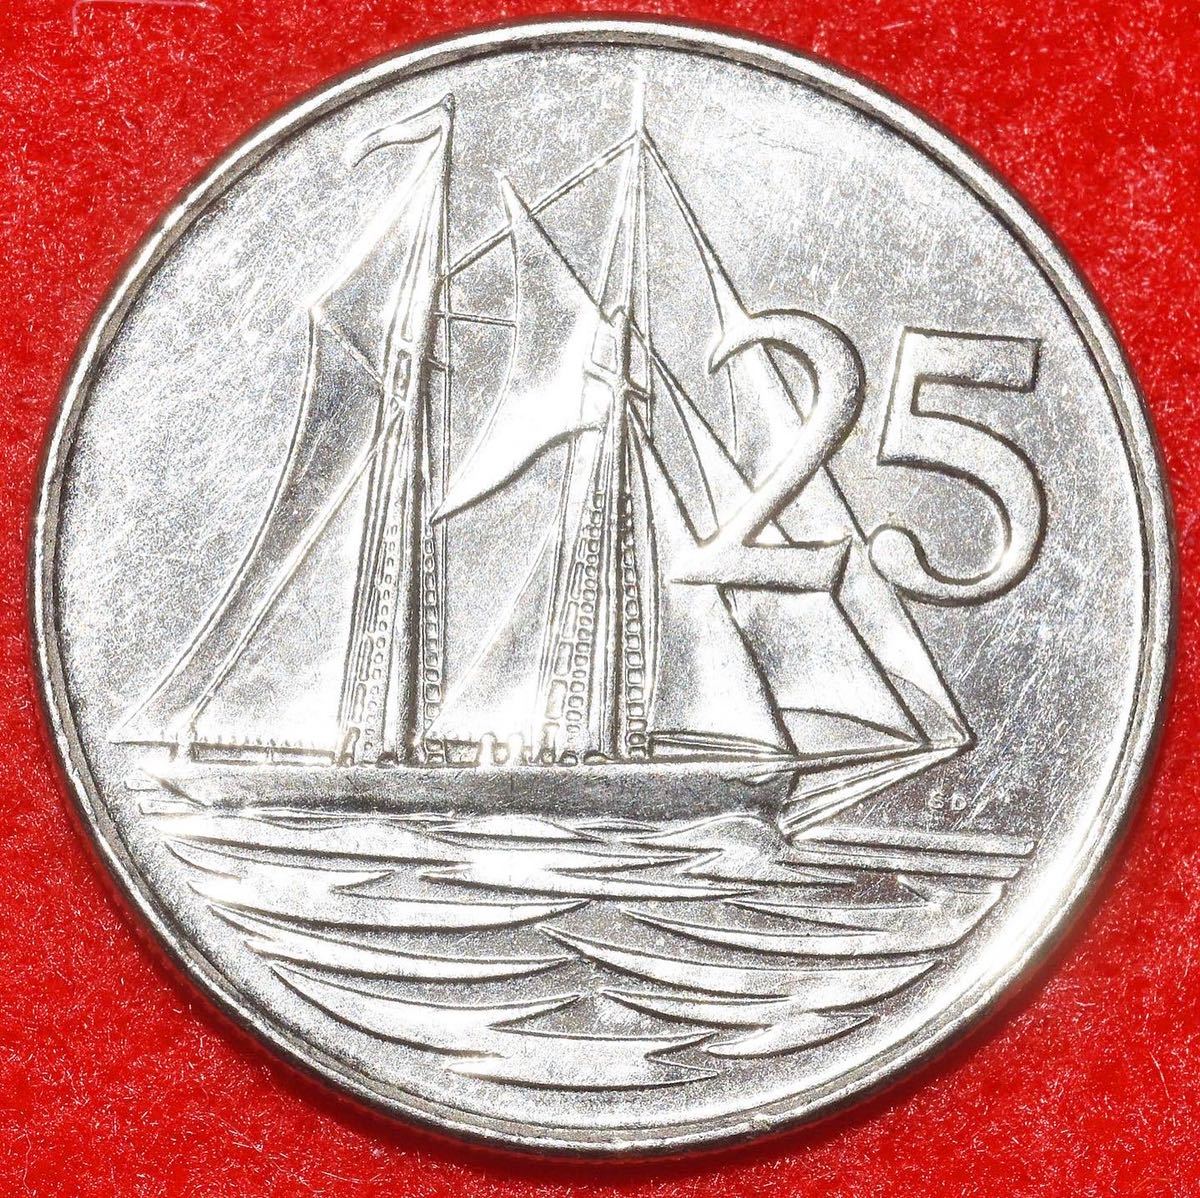 【真正保証】2005年ケイマン諸島 25セント硬貨 エリザベス2世 イギリス連邦 旧英領植民地 UK海外領土 カリブ海 帆船 外国コイン 極美品の画像1